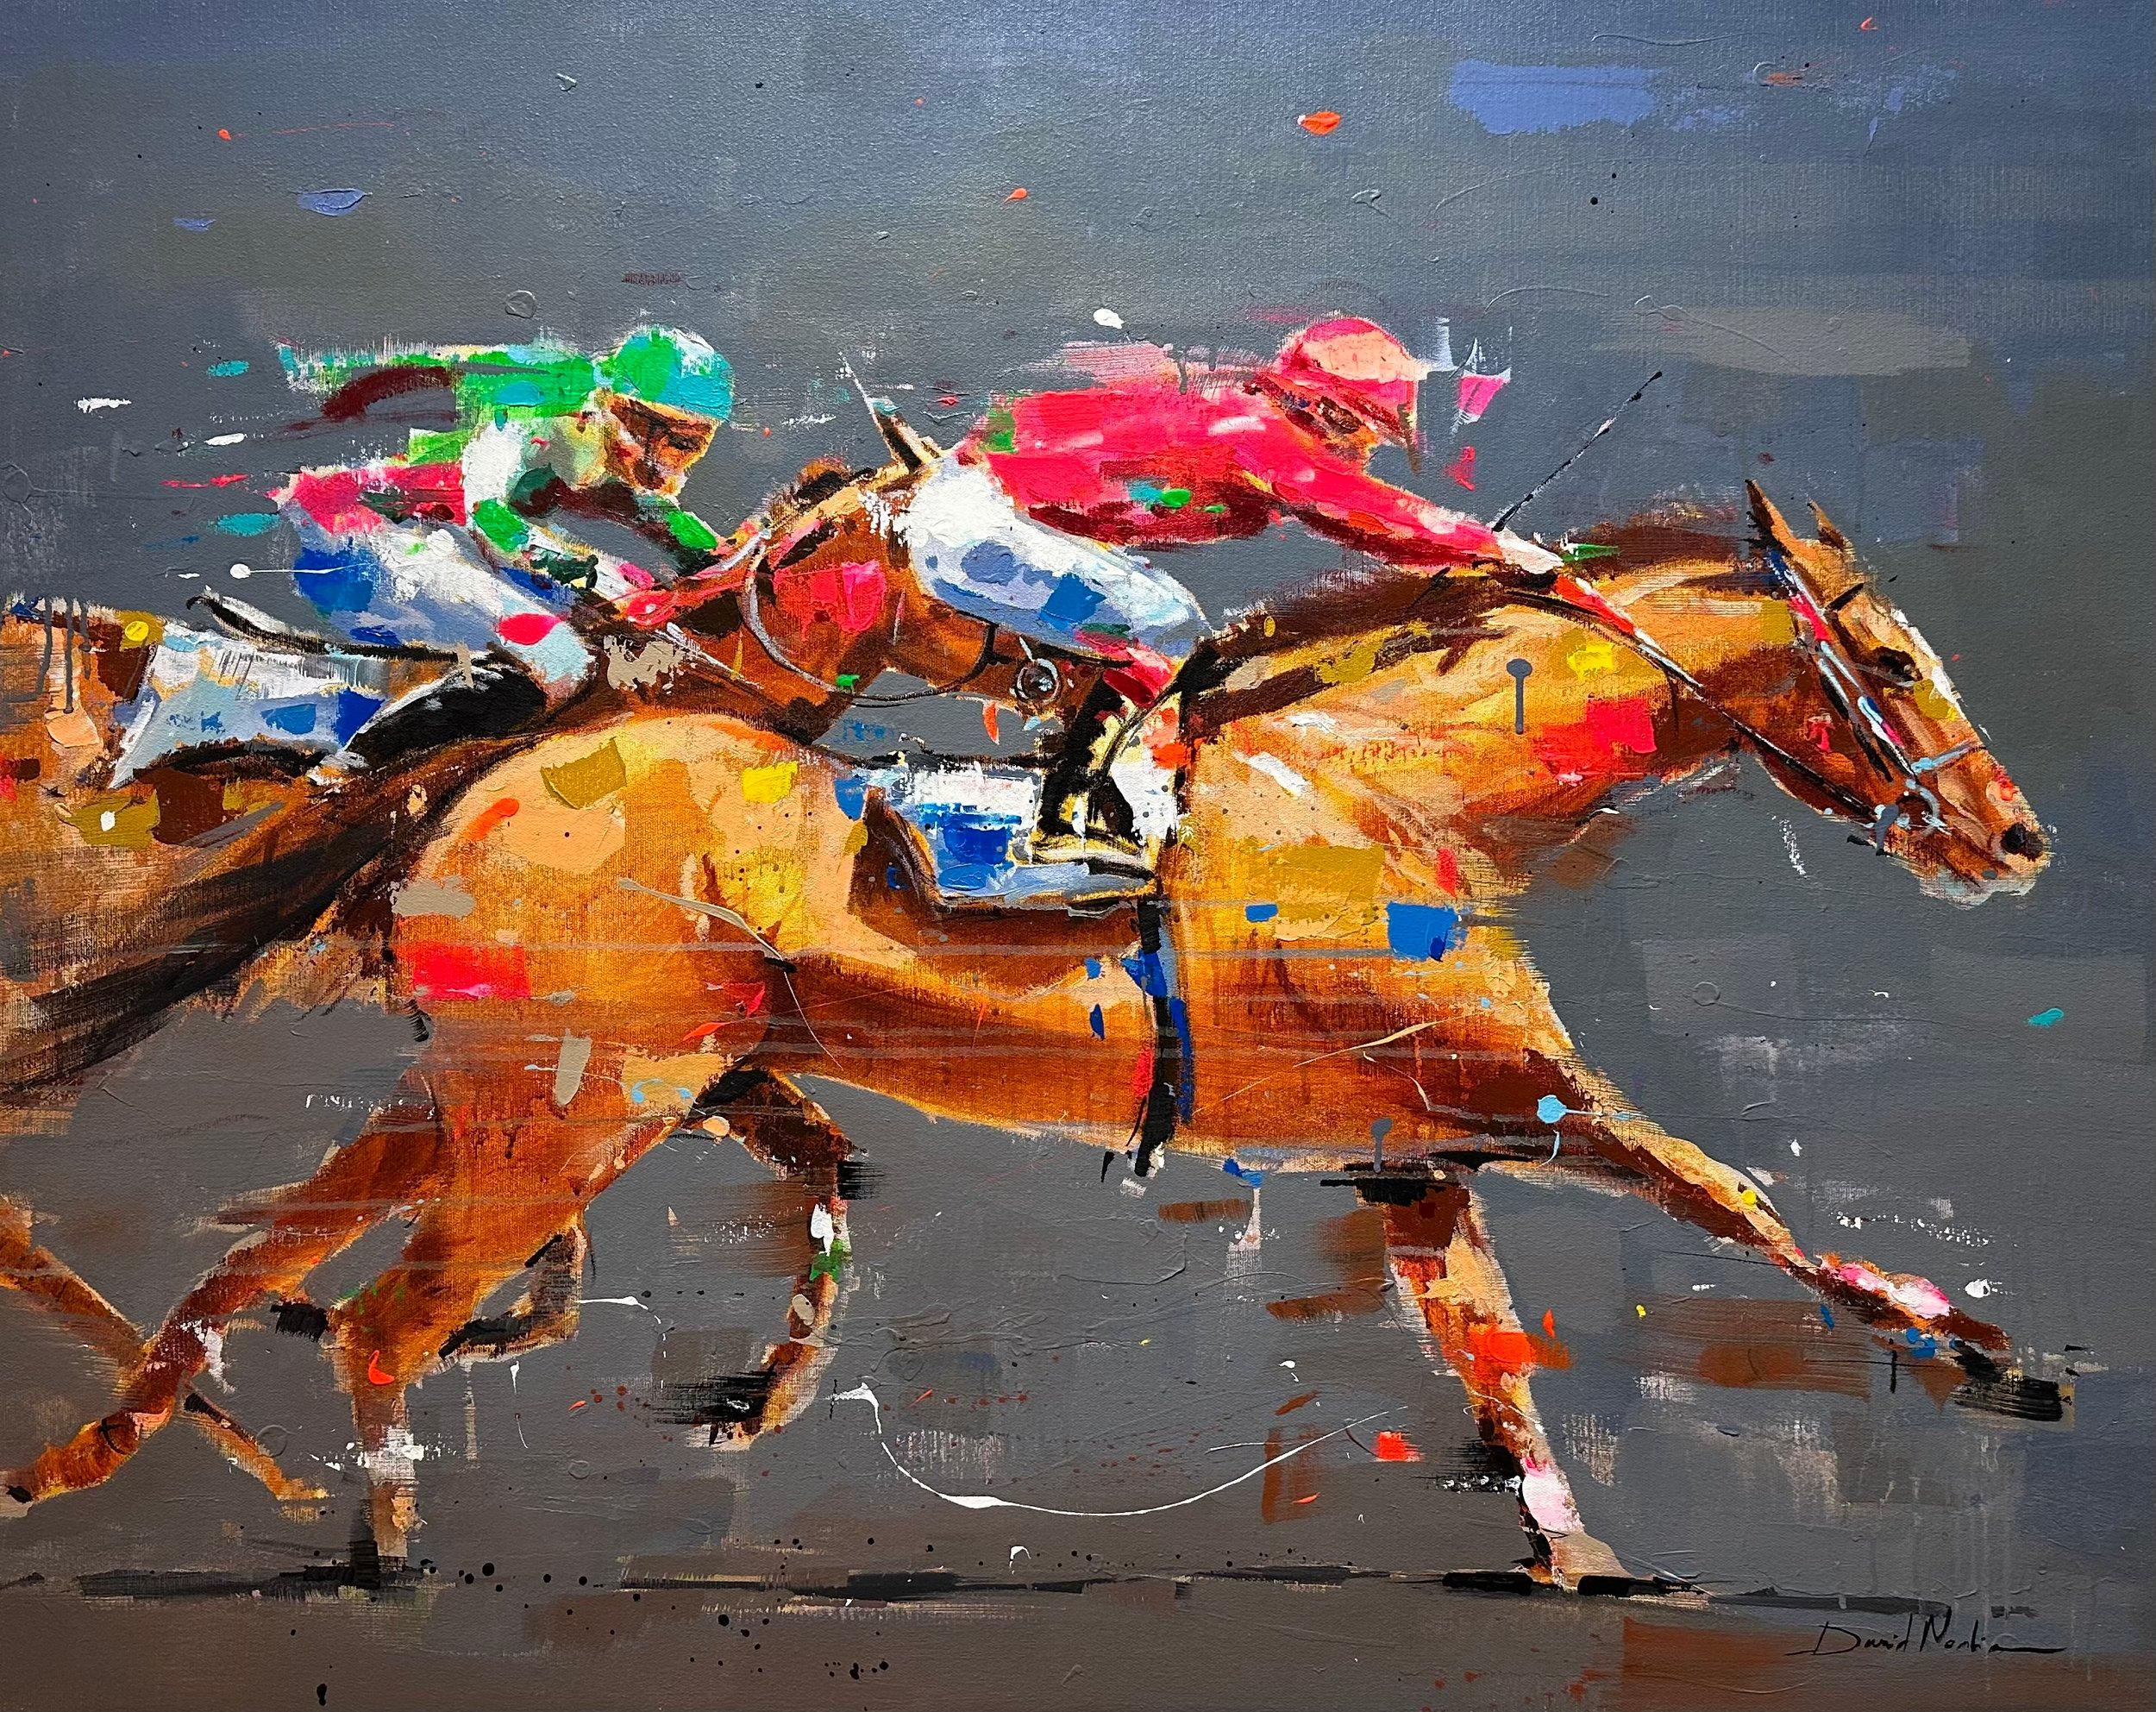 Animal Painting David Noalia  - David Noalia, "Strong Stride" 36x45 Peinture équine colorée sur les courses de chevaux